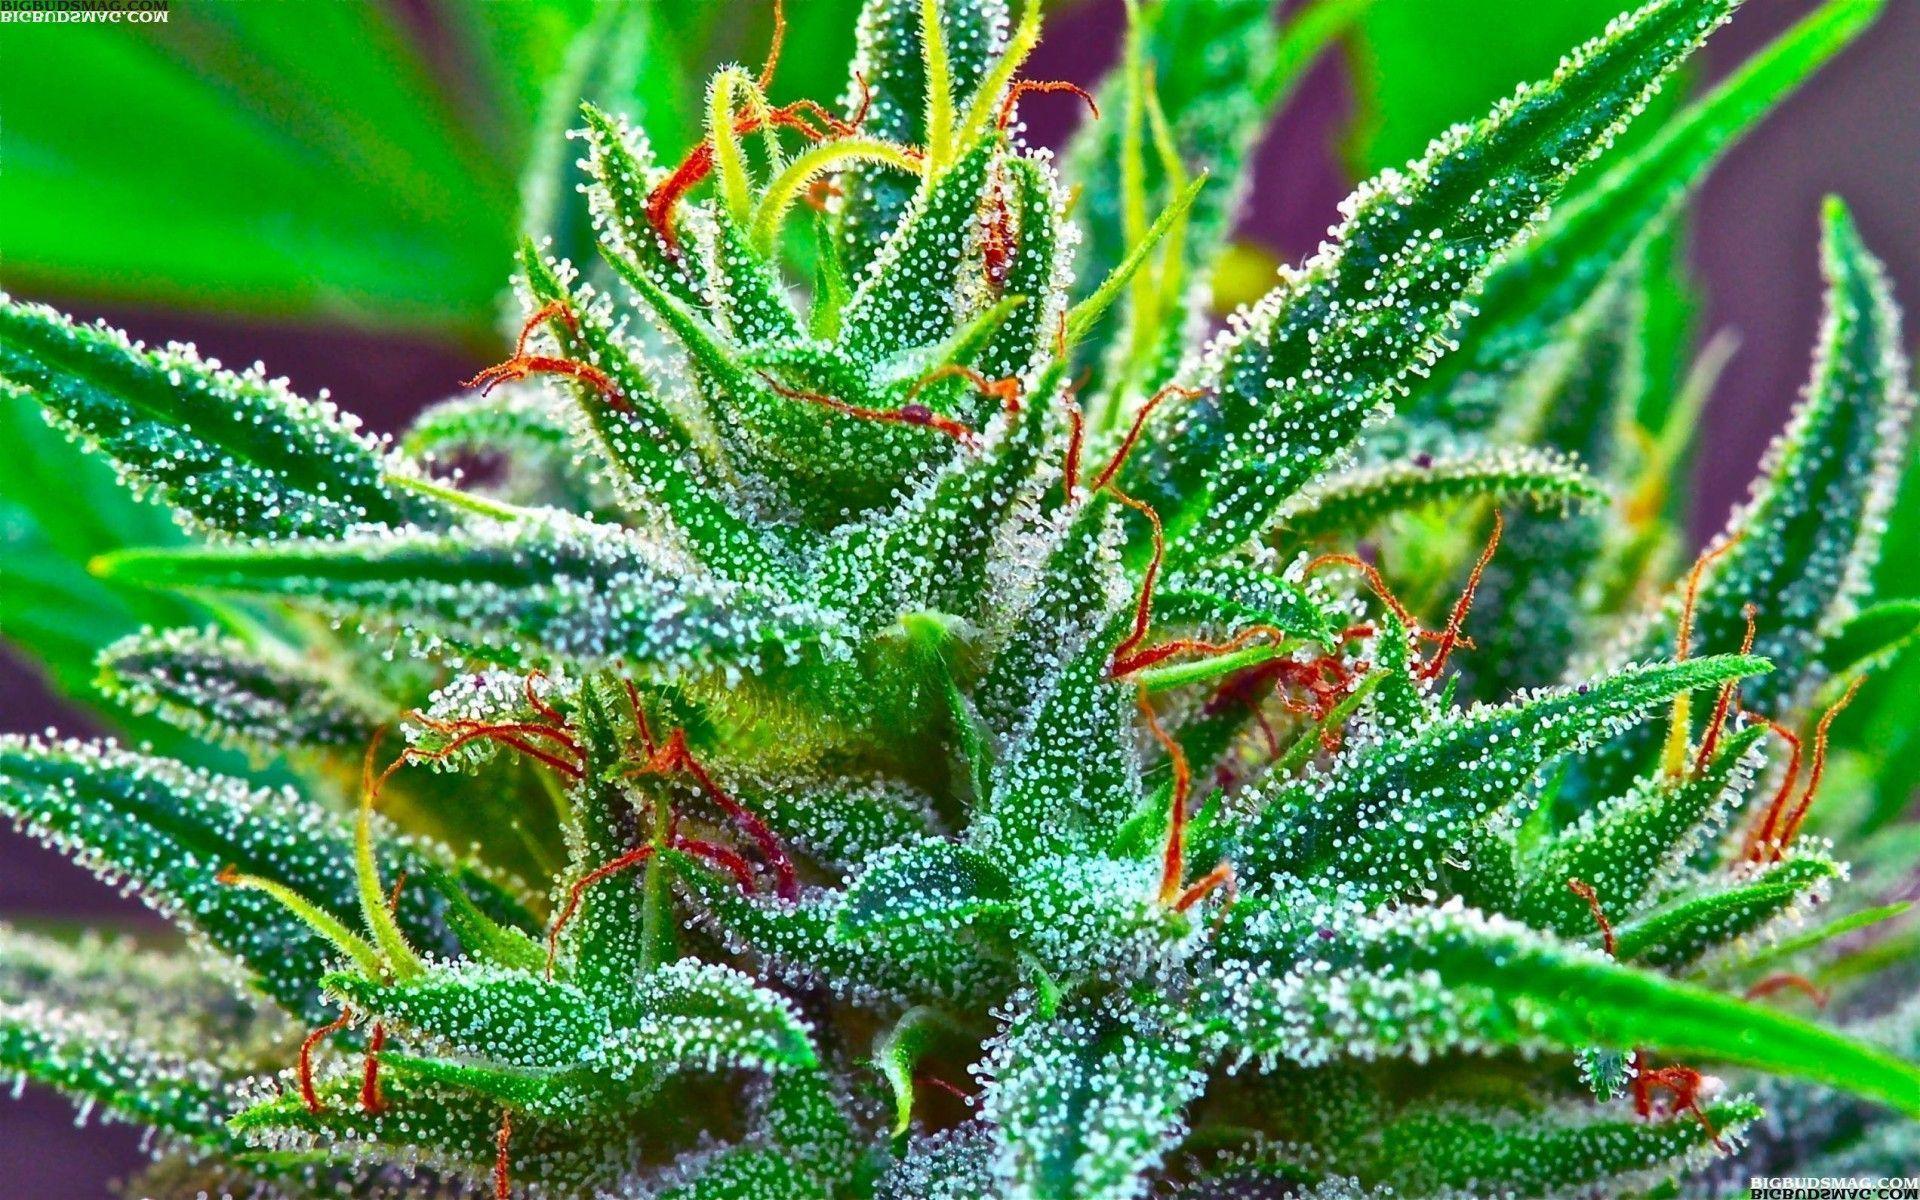 Marijuana Wallpaper HD iPhone